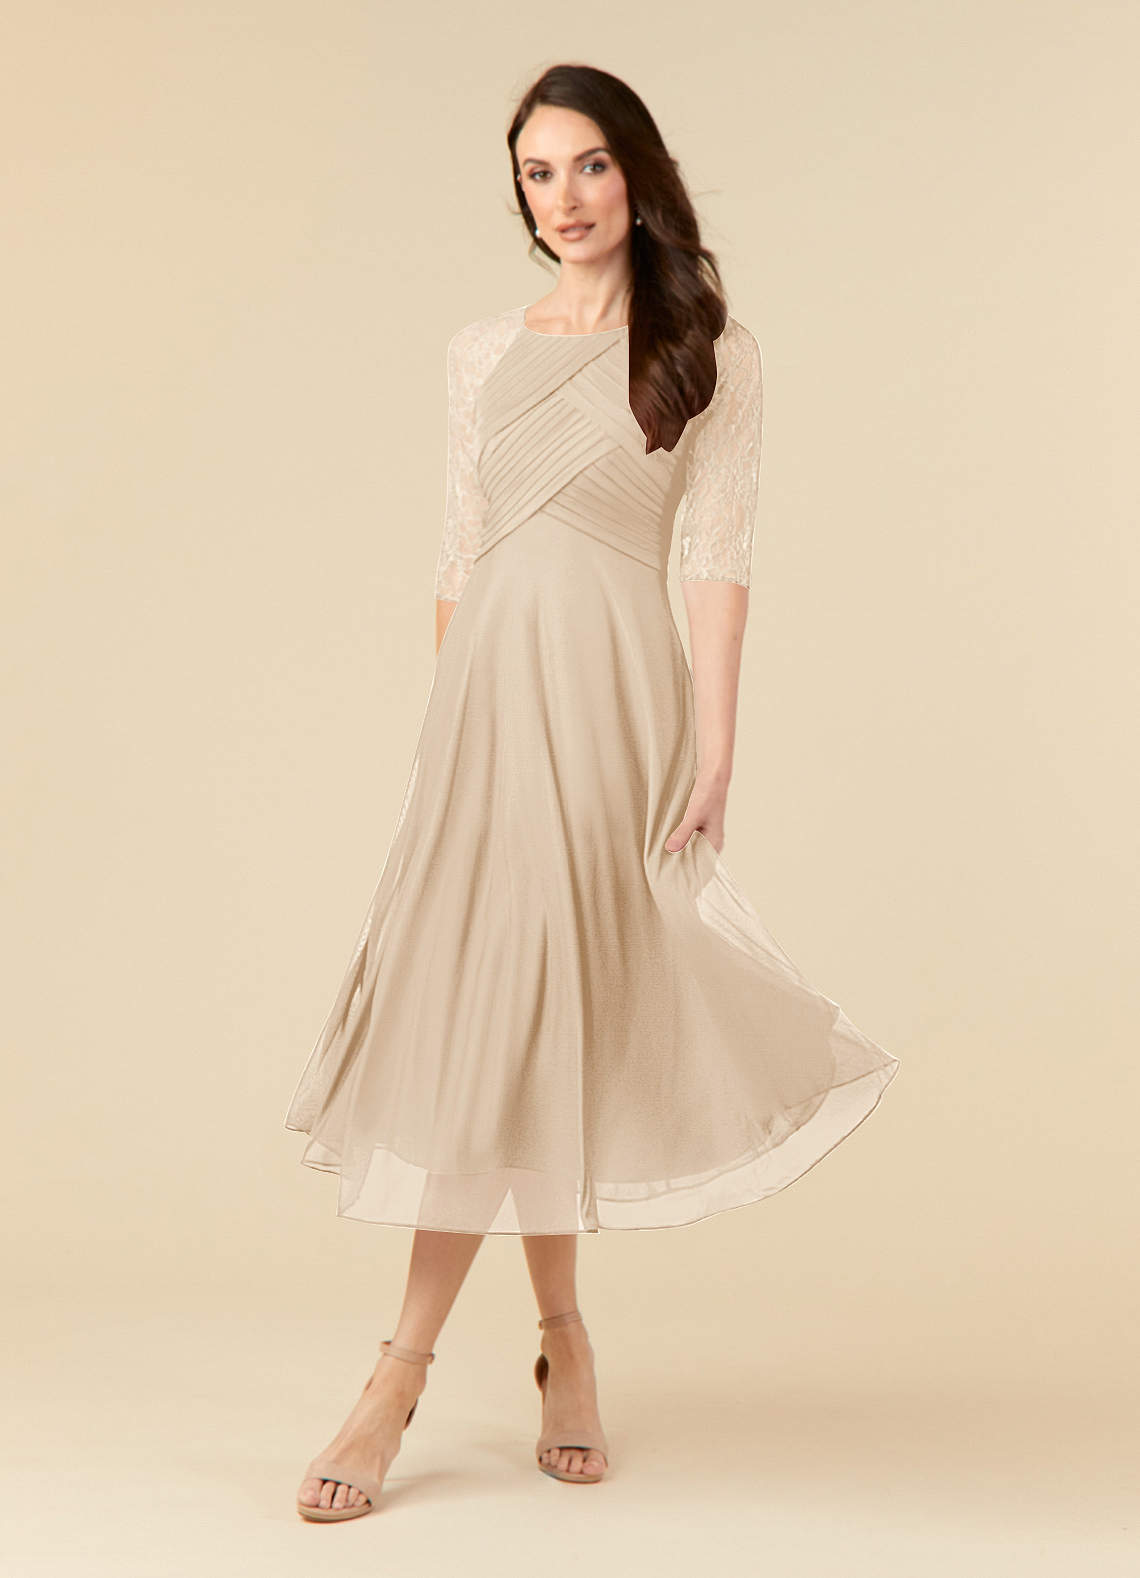 Azazie Gracelyn Mother of the Bride Dresses A-Line Lace Tea-Length Dress image1